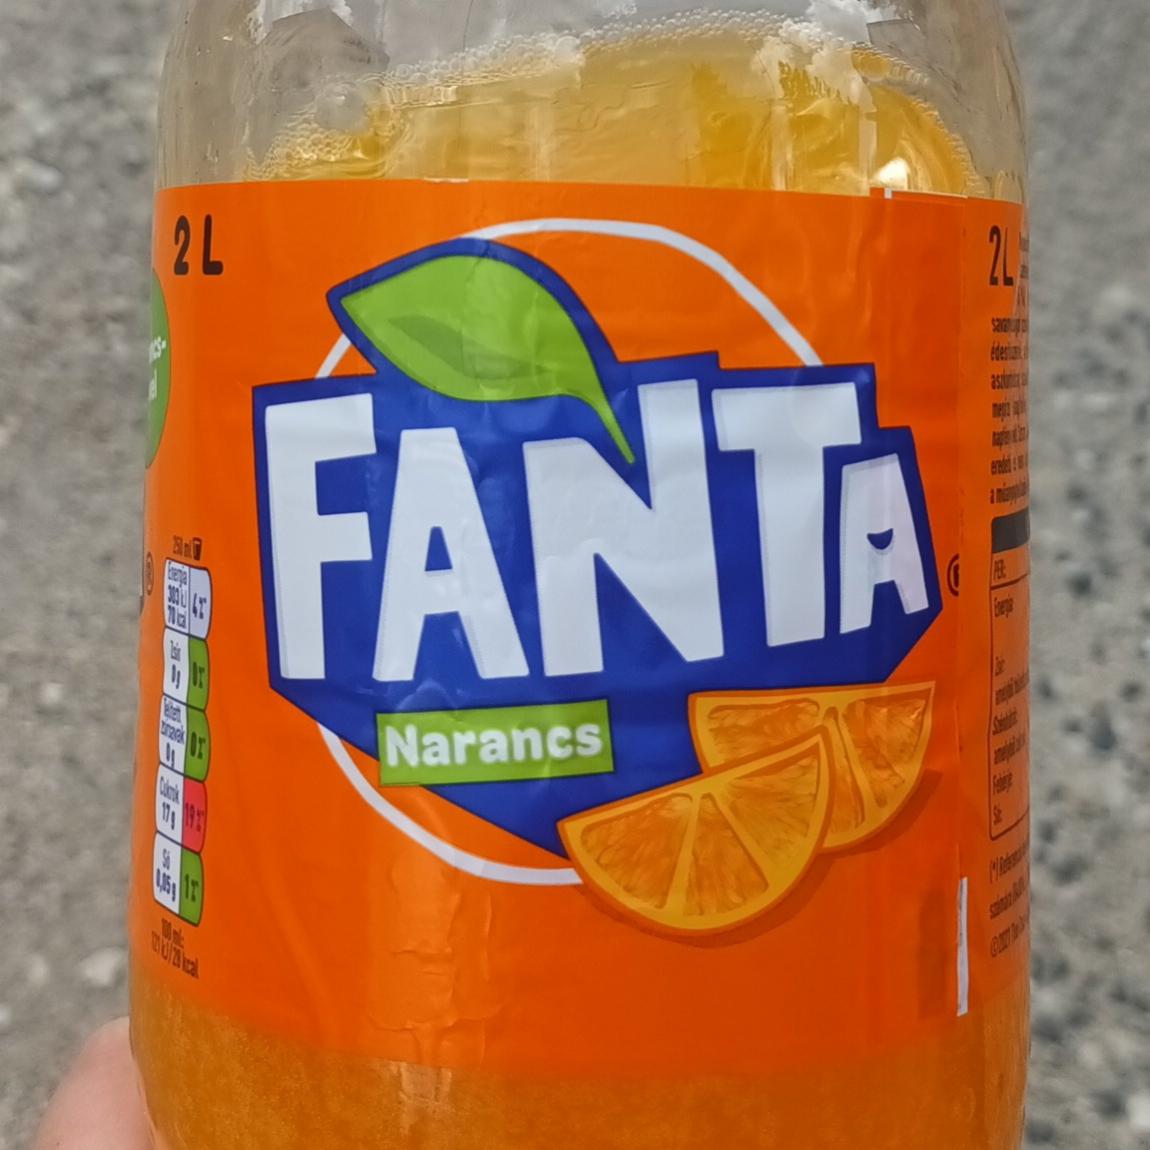 Képek - Fanta narancs ízű szénsavas üdítőital cukorral és édesítőszerekkel